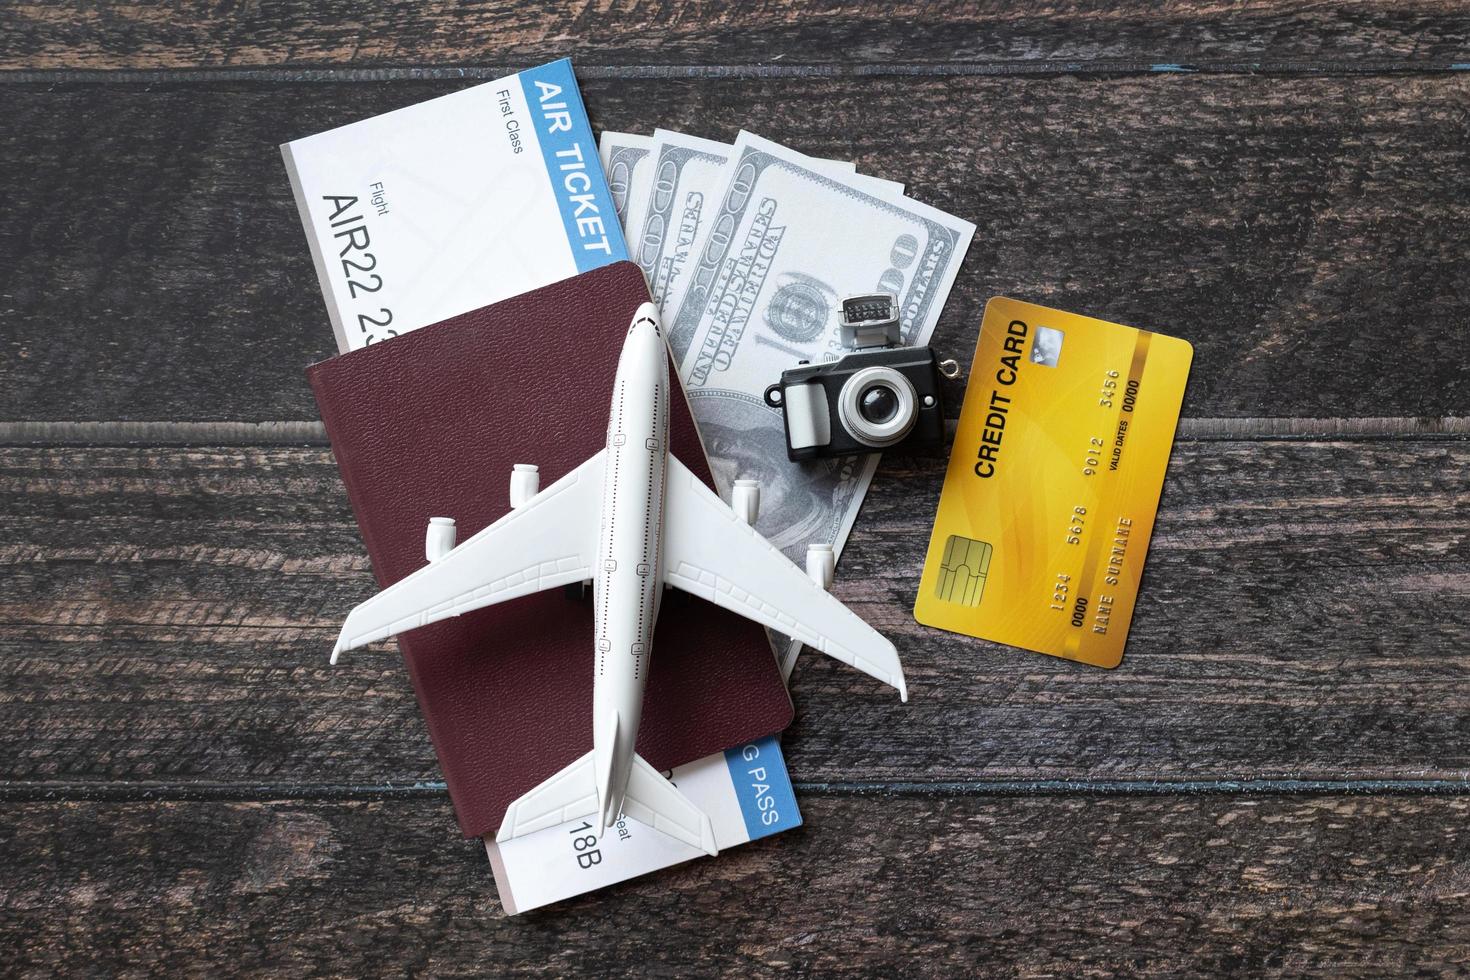 speelgoedvliegtuig, vliegticket, creditcards, dollars en paspoort op houten tafel. reisconcept foto